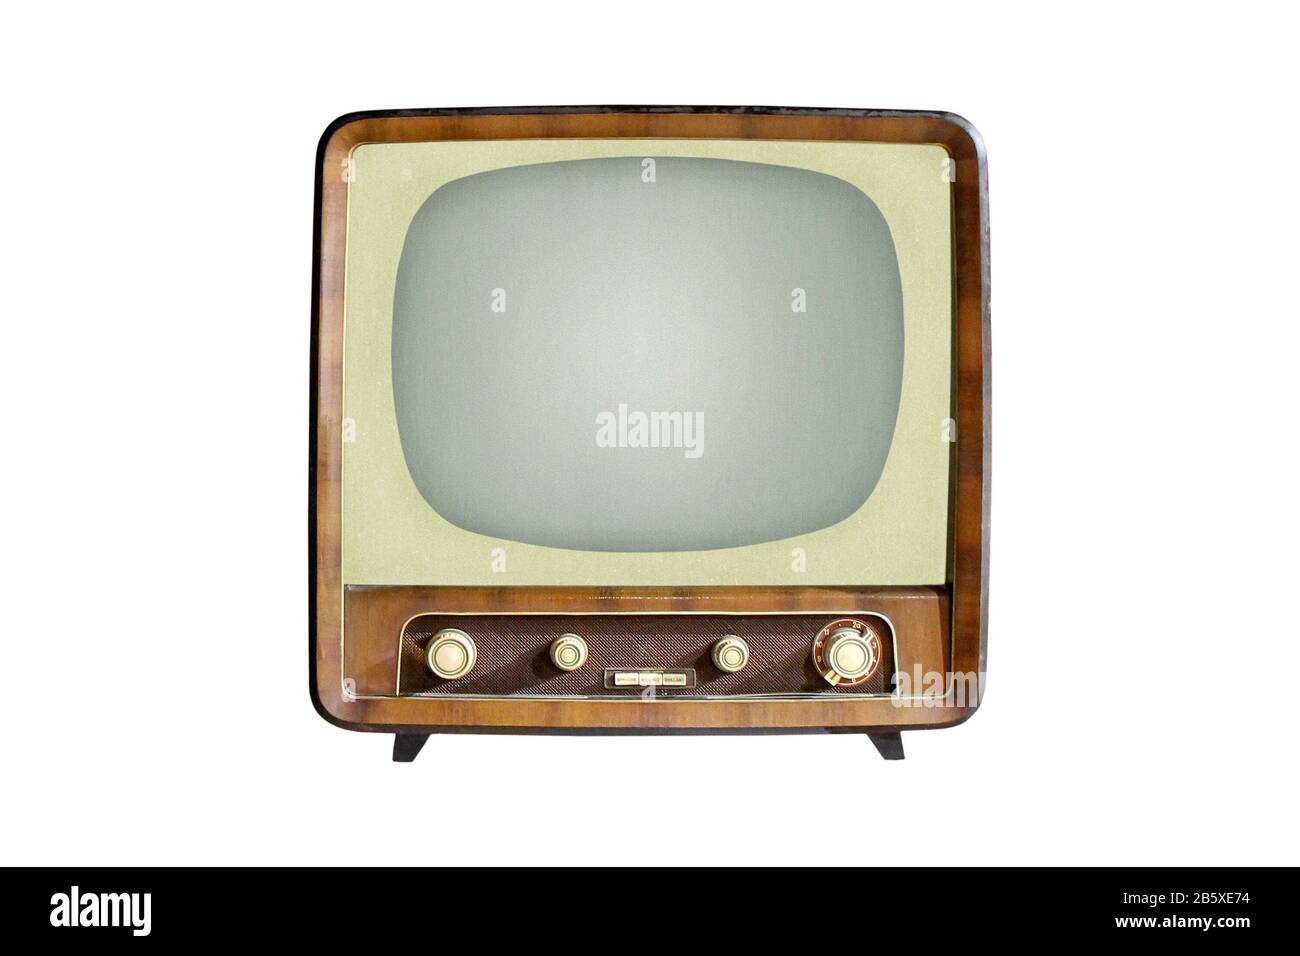 Vintage CRT TV set isolated on white background, retro analog television technology Stock Photo